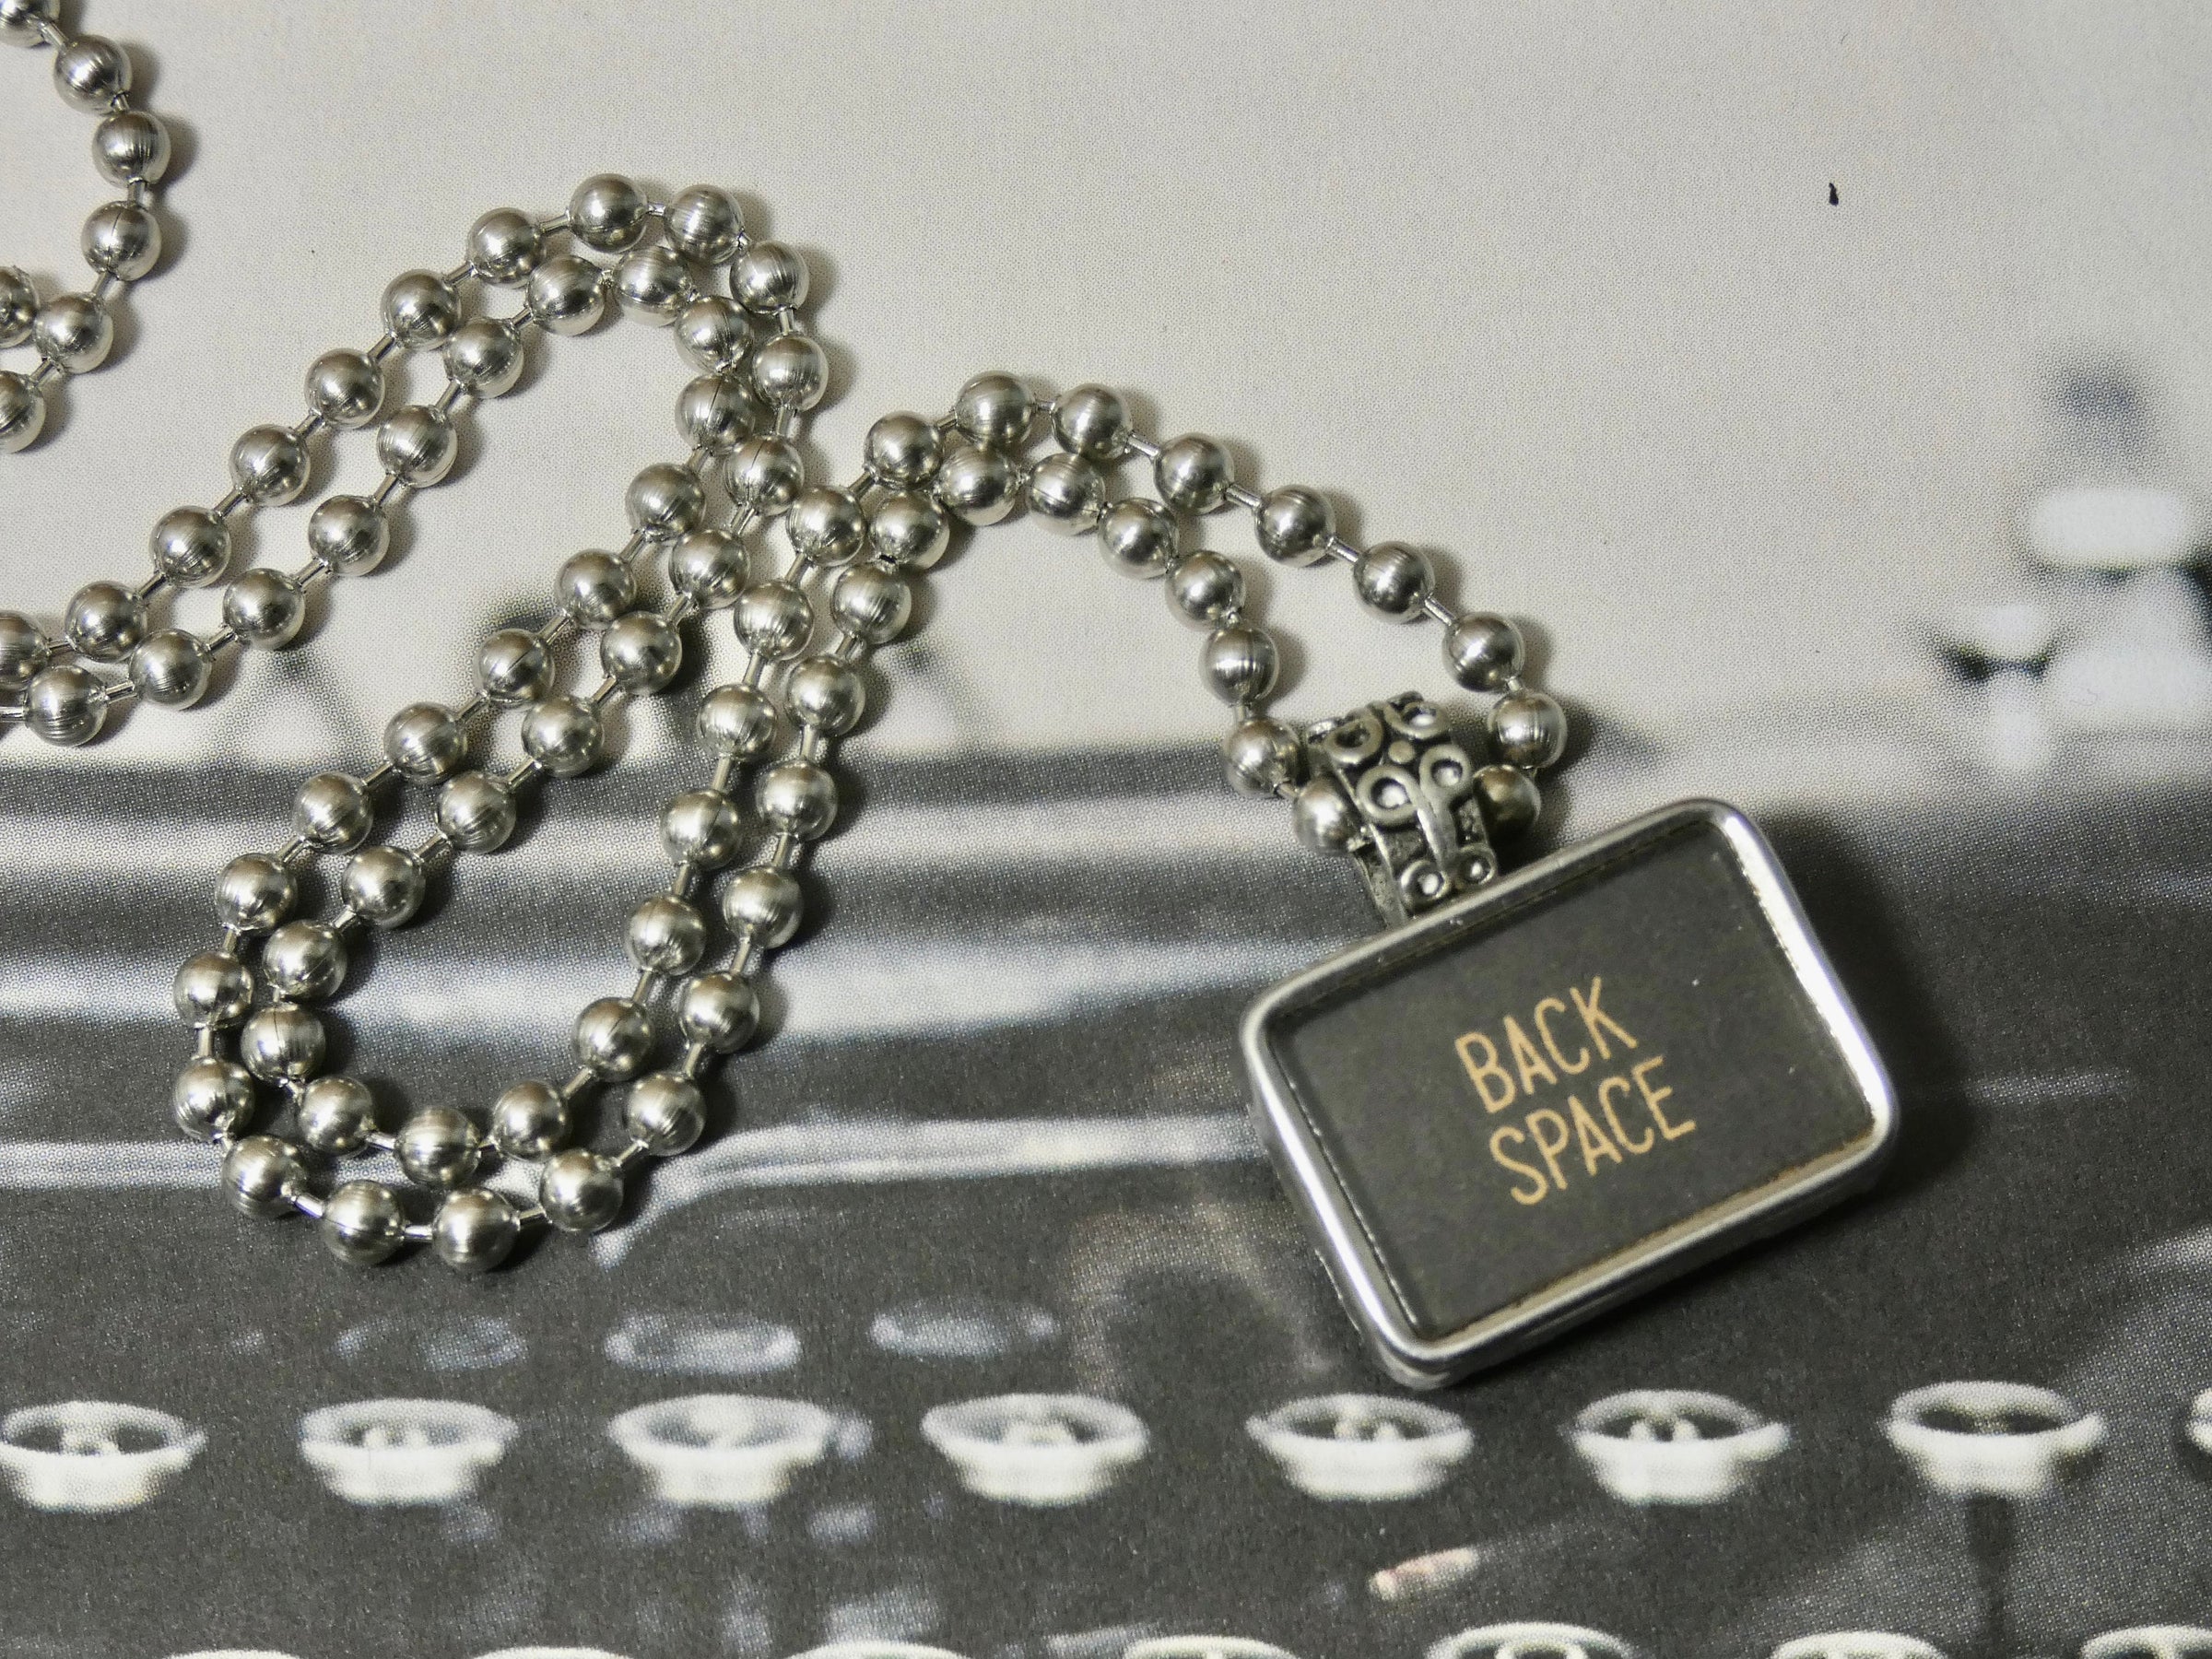 Typewriter Necklace rectangle Tabular, Back Space, Authentic Typewriter Key pendant